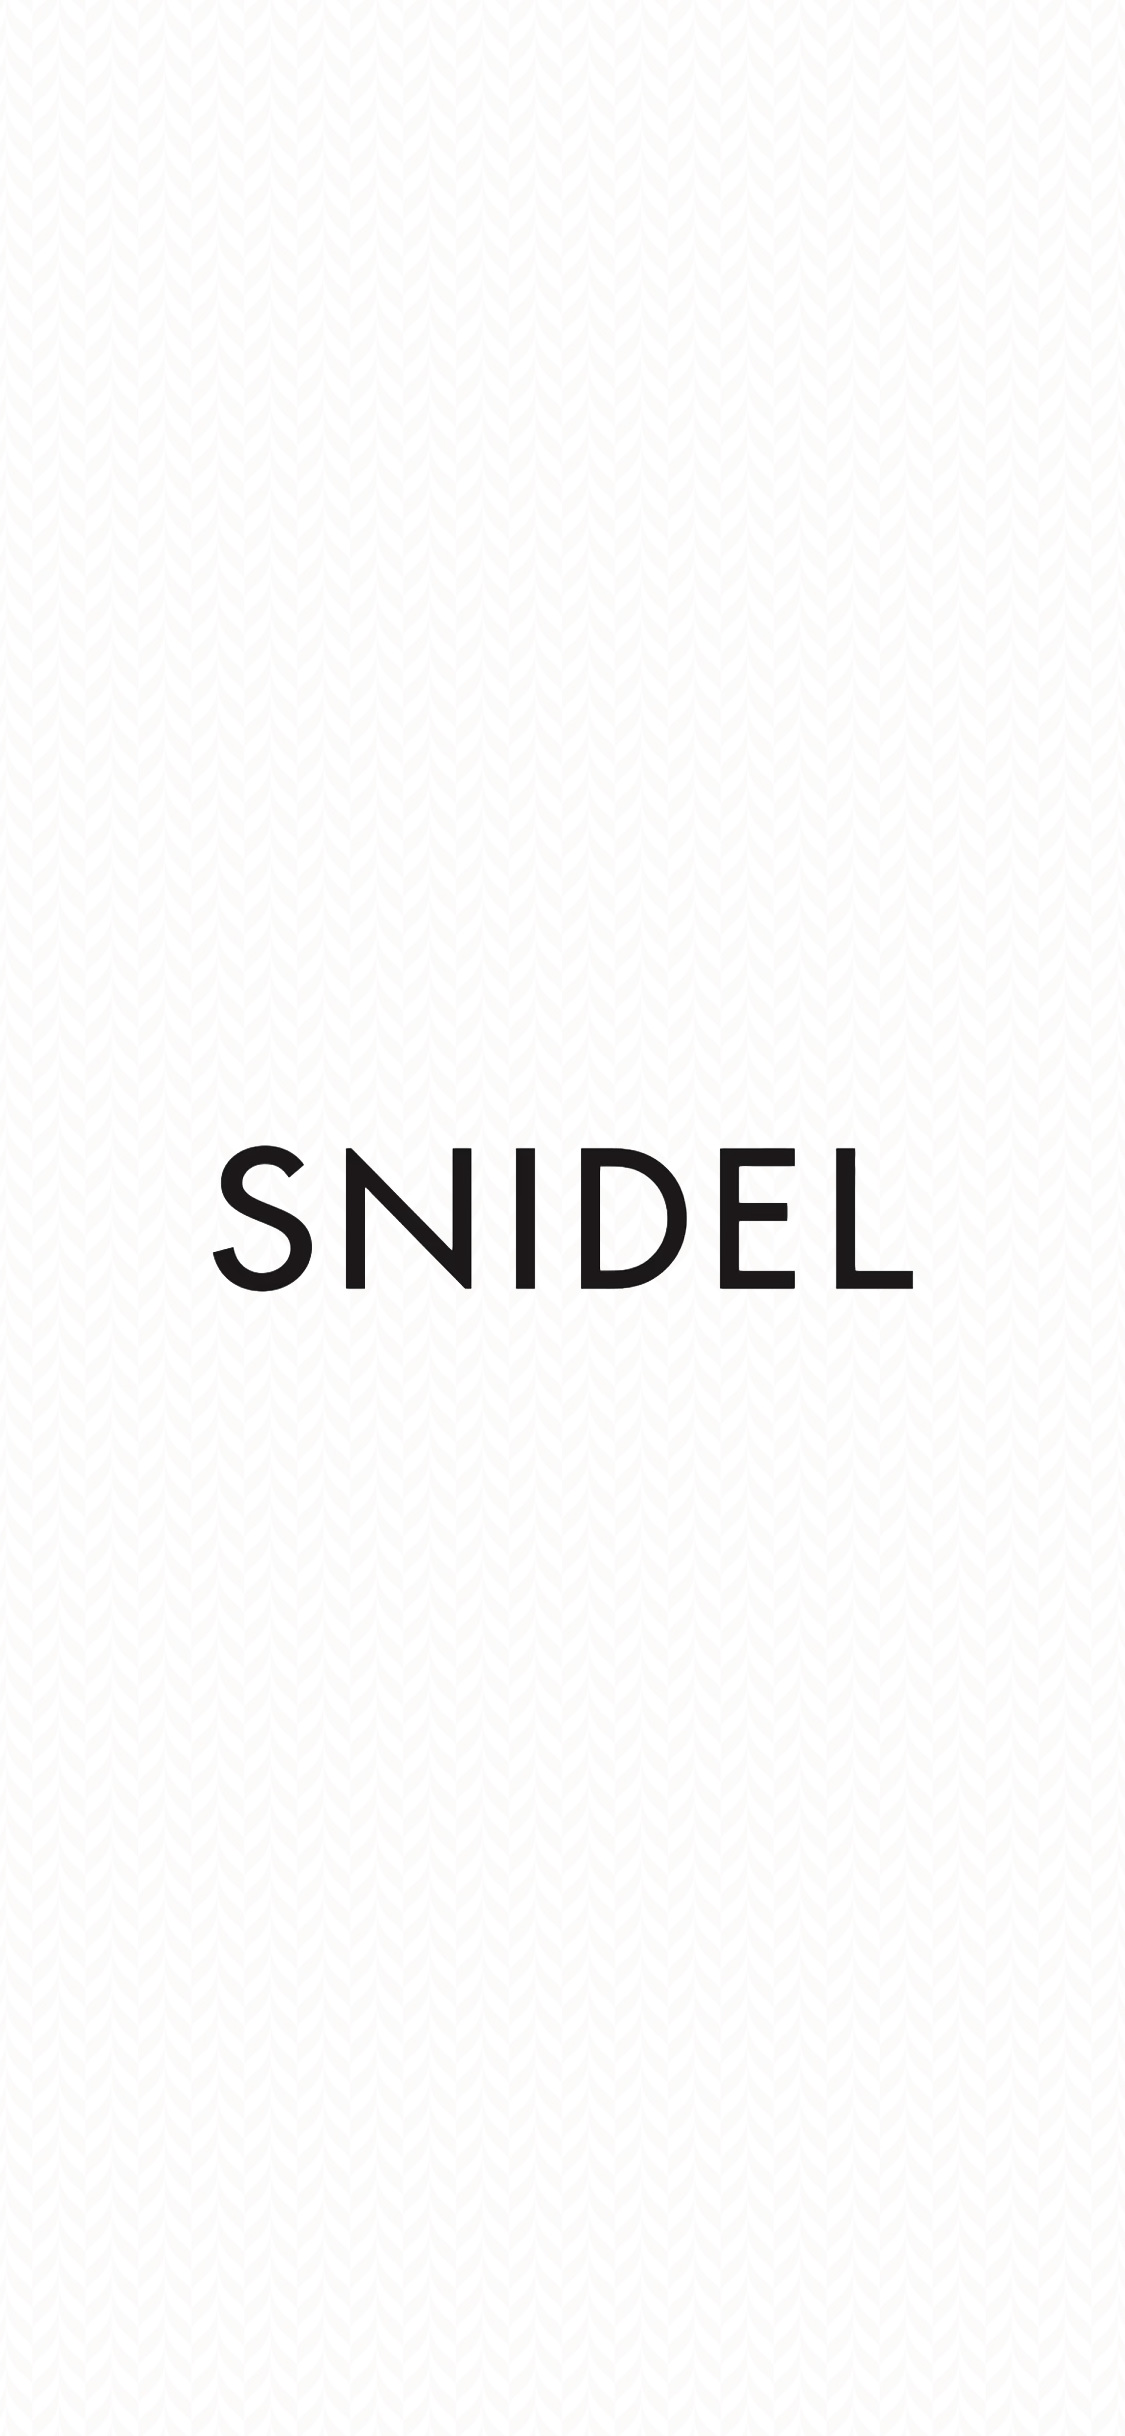 スナイデル Snidelの無料高画質スマホ壁紙61枚 エモい スマホ壁紙辞典